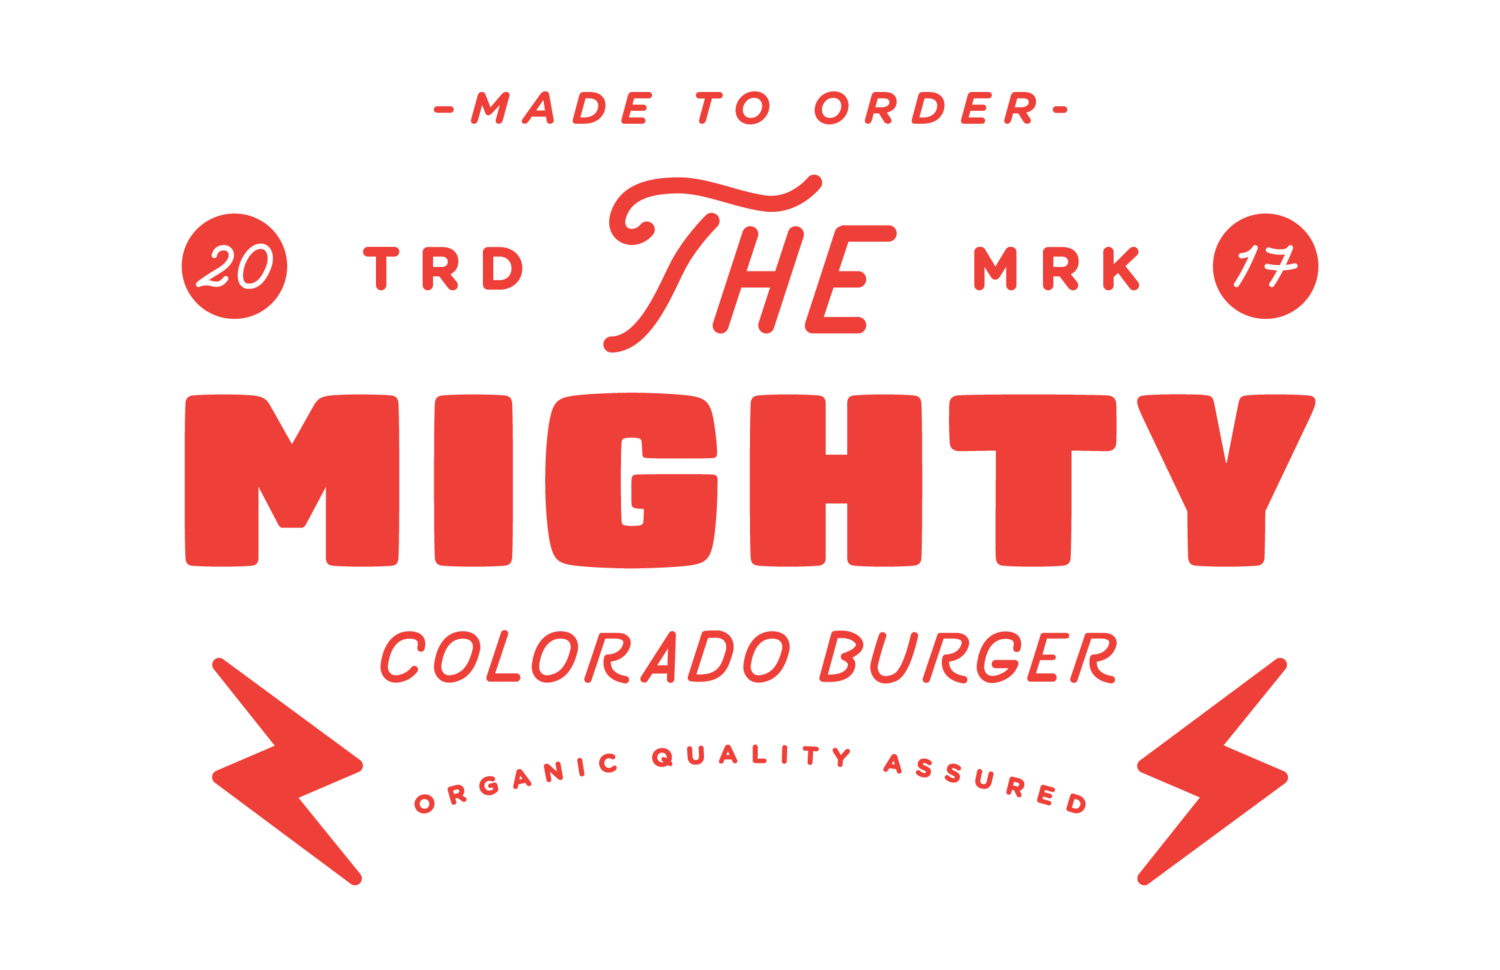 The Mighty Colorado Burger